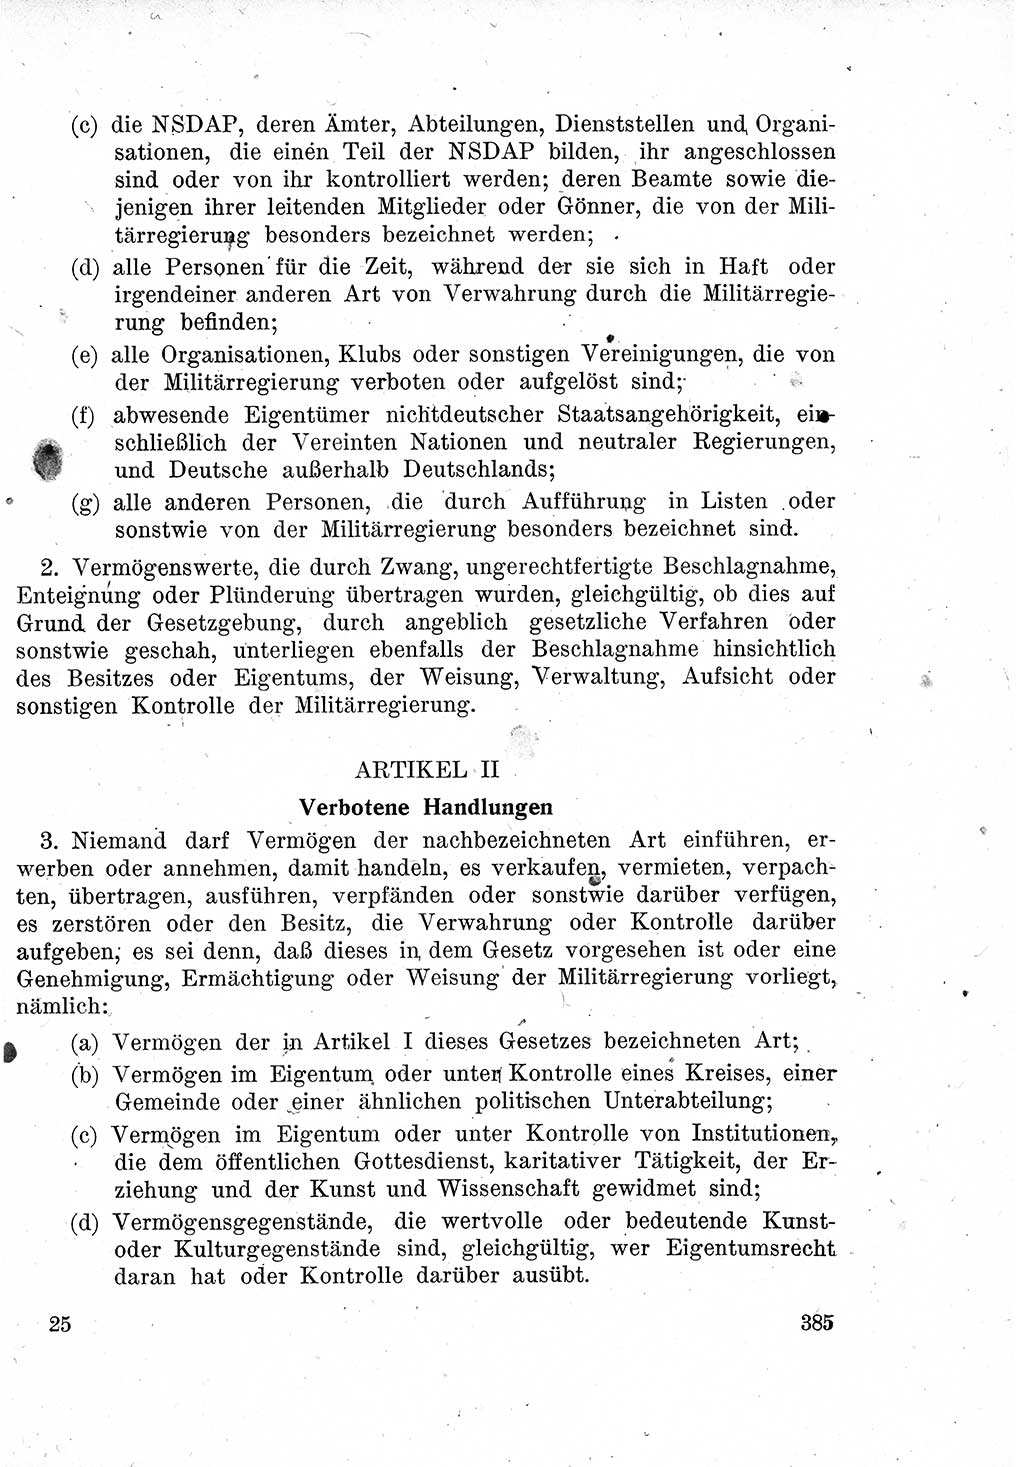 Das Recht der Besatzungsmacht (Deutschland), Proklamationen, Deklerationen, Verordnungen, Gesetze und Bekanntmachungen 1947, Seite 385 (R. Bes. Dtl. 1947, S. 385)